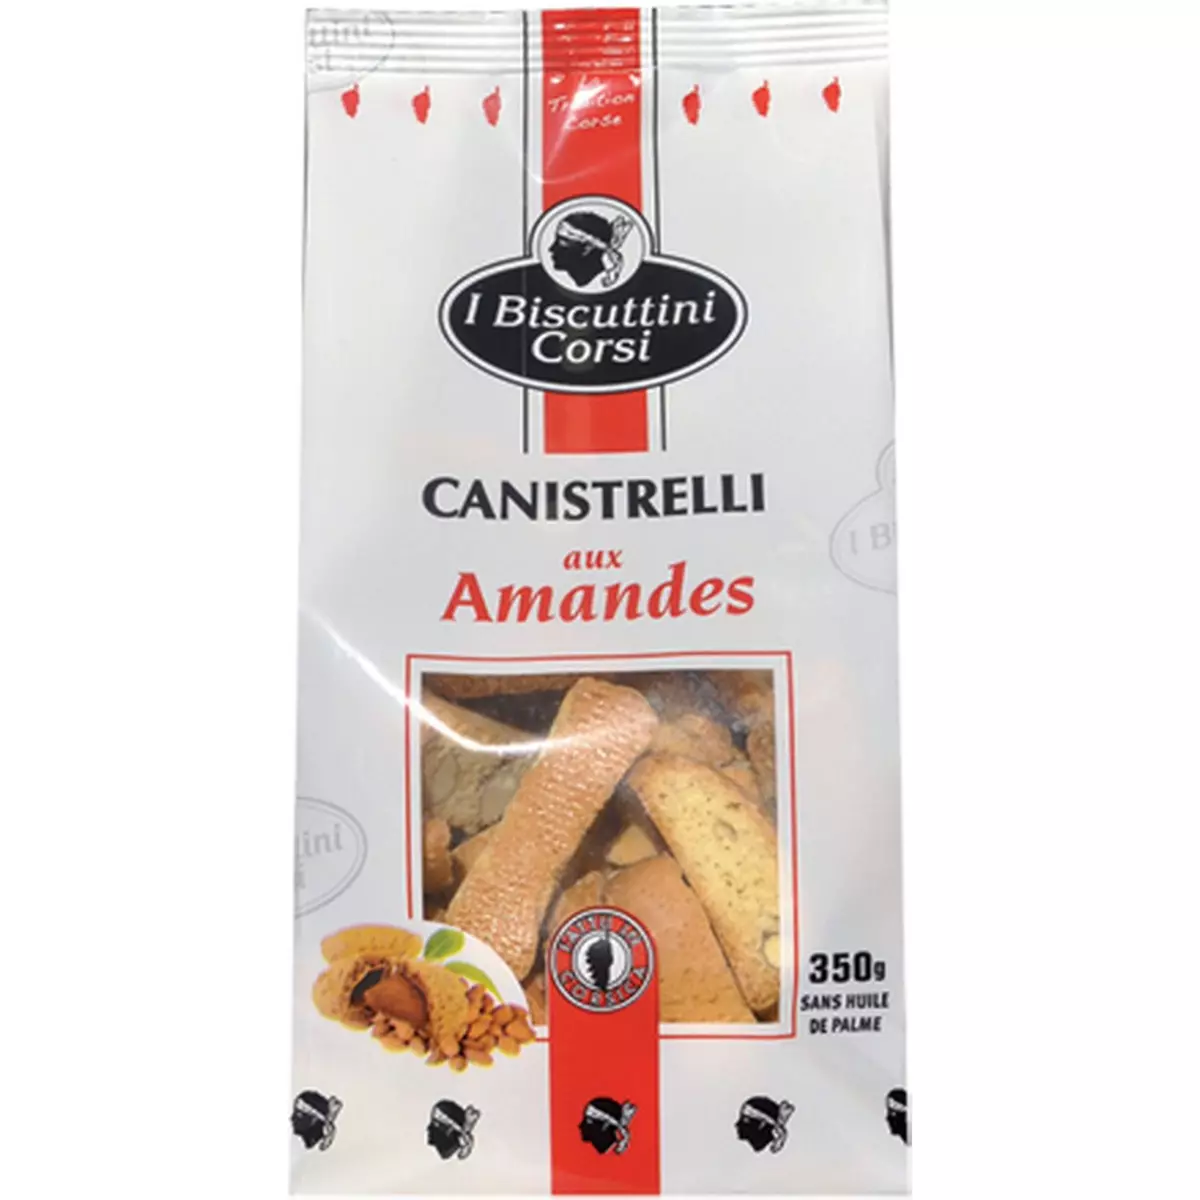 I BISCUTTINI CORSI Biscuits Canistrelli de Corse aux amandes 350g